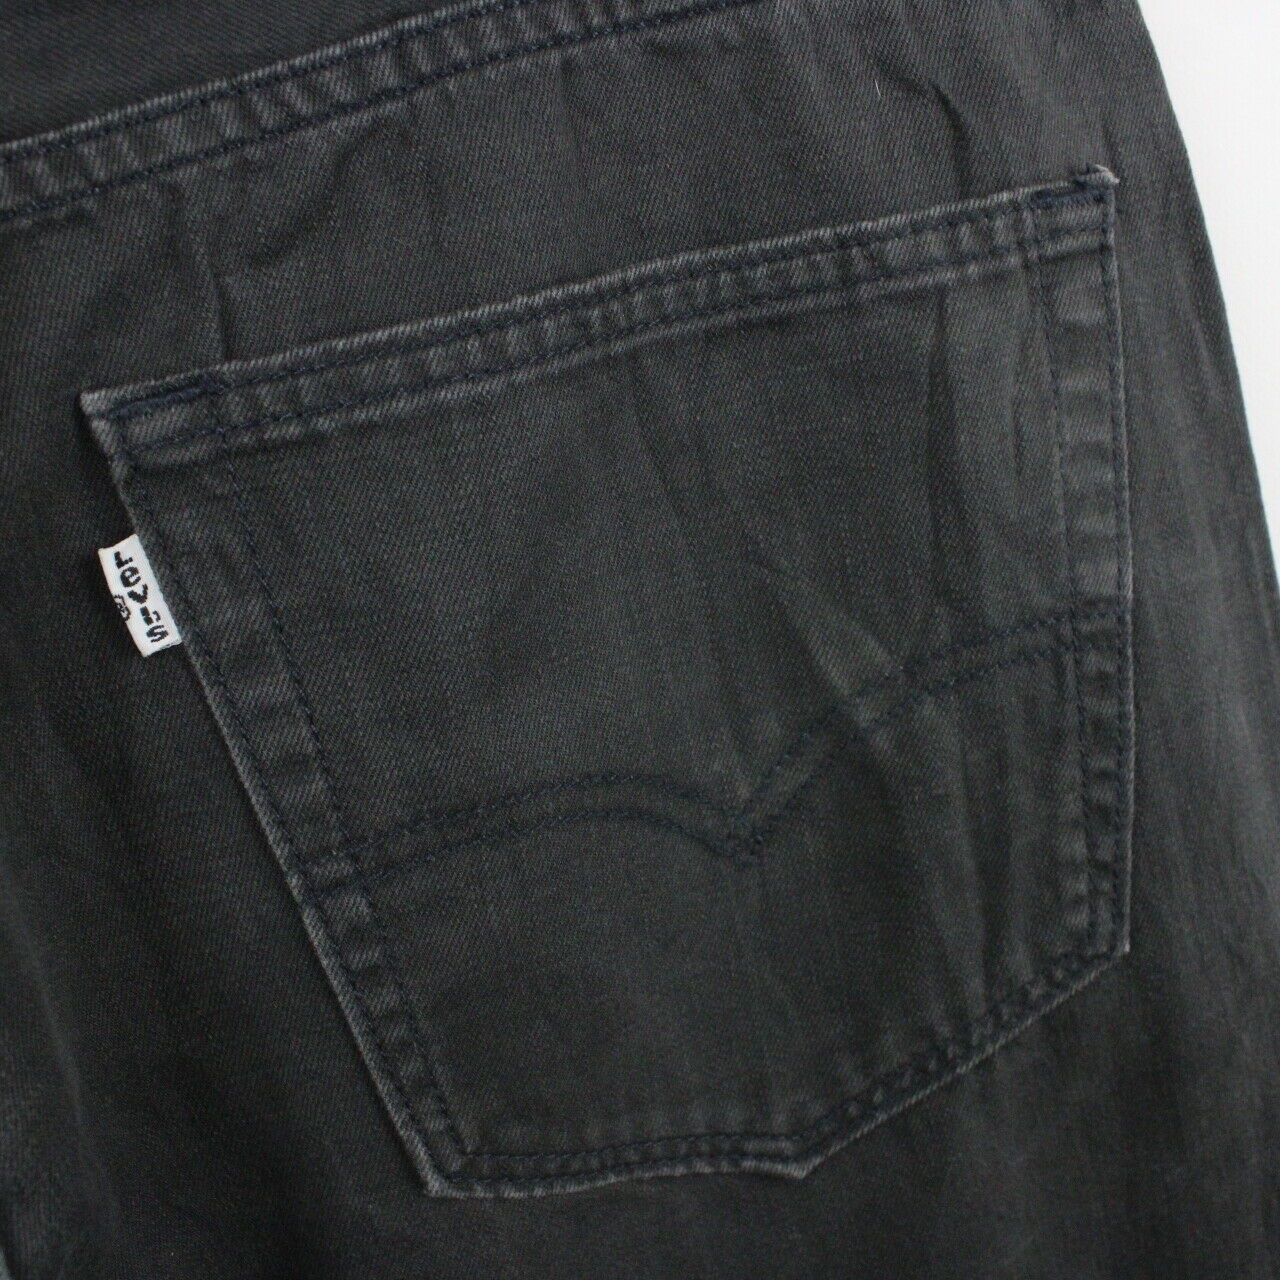 LEVIS 505 Jeans Black |  W38 L36